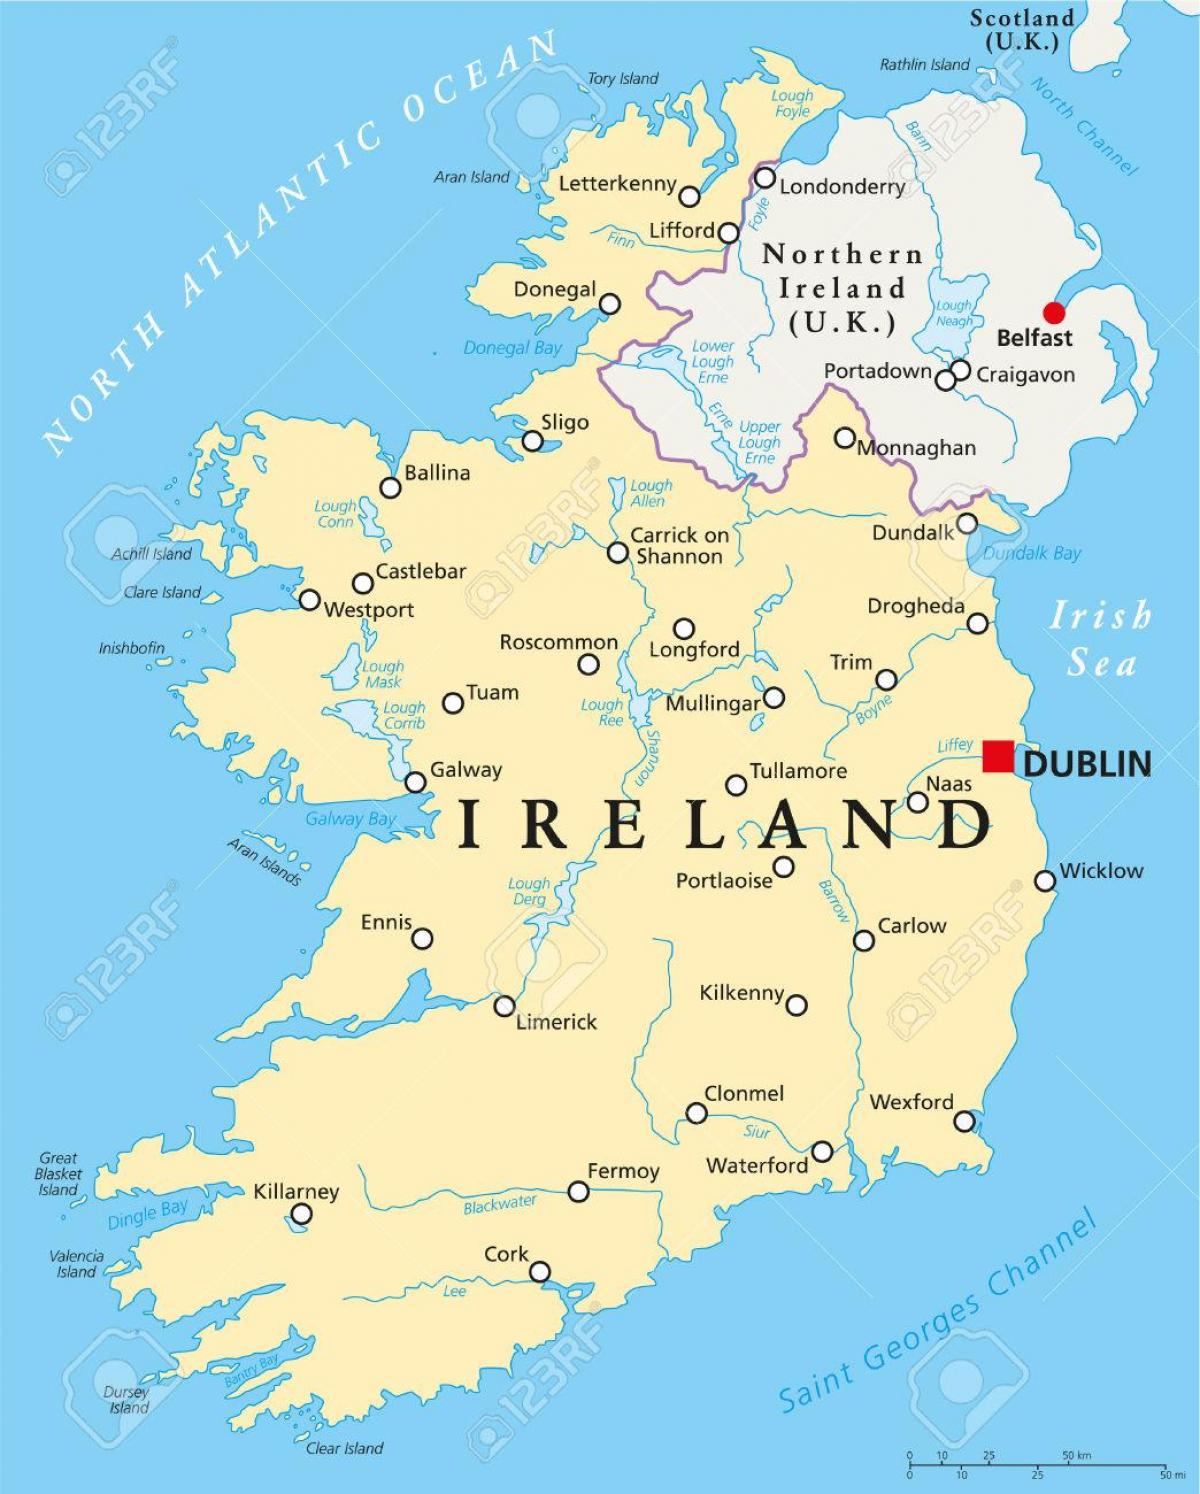 Irlanda, Dublin arată hartă